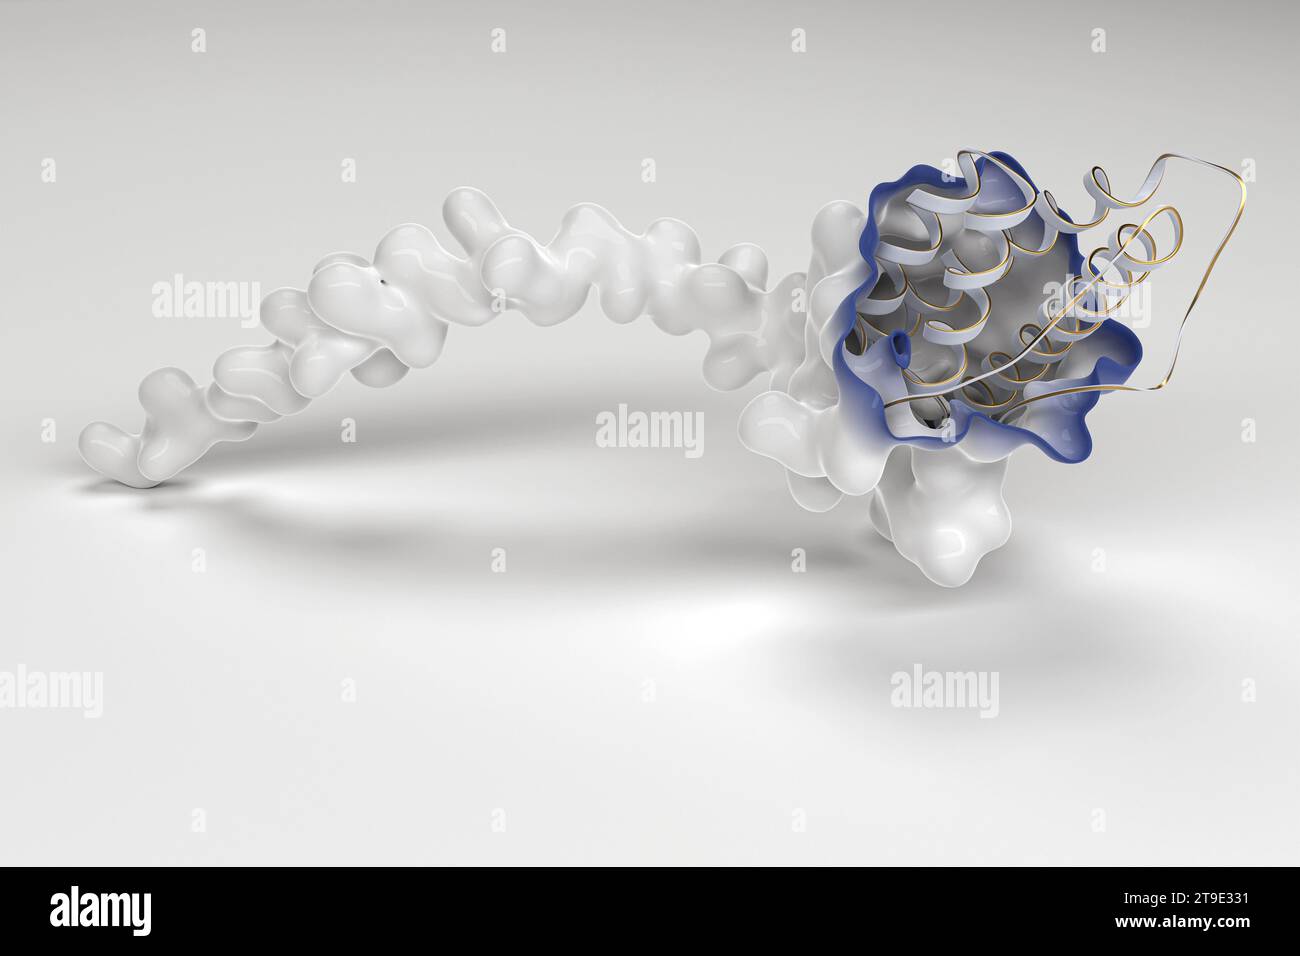 Interleukin-31 protein structure, illustration Stock Photo